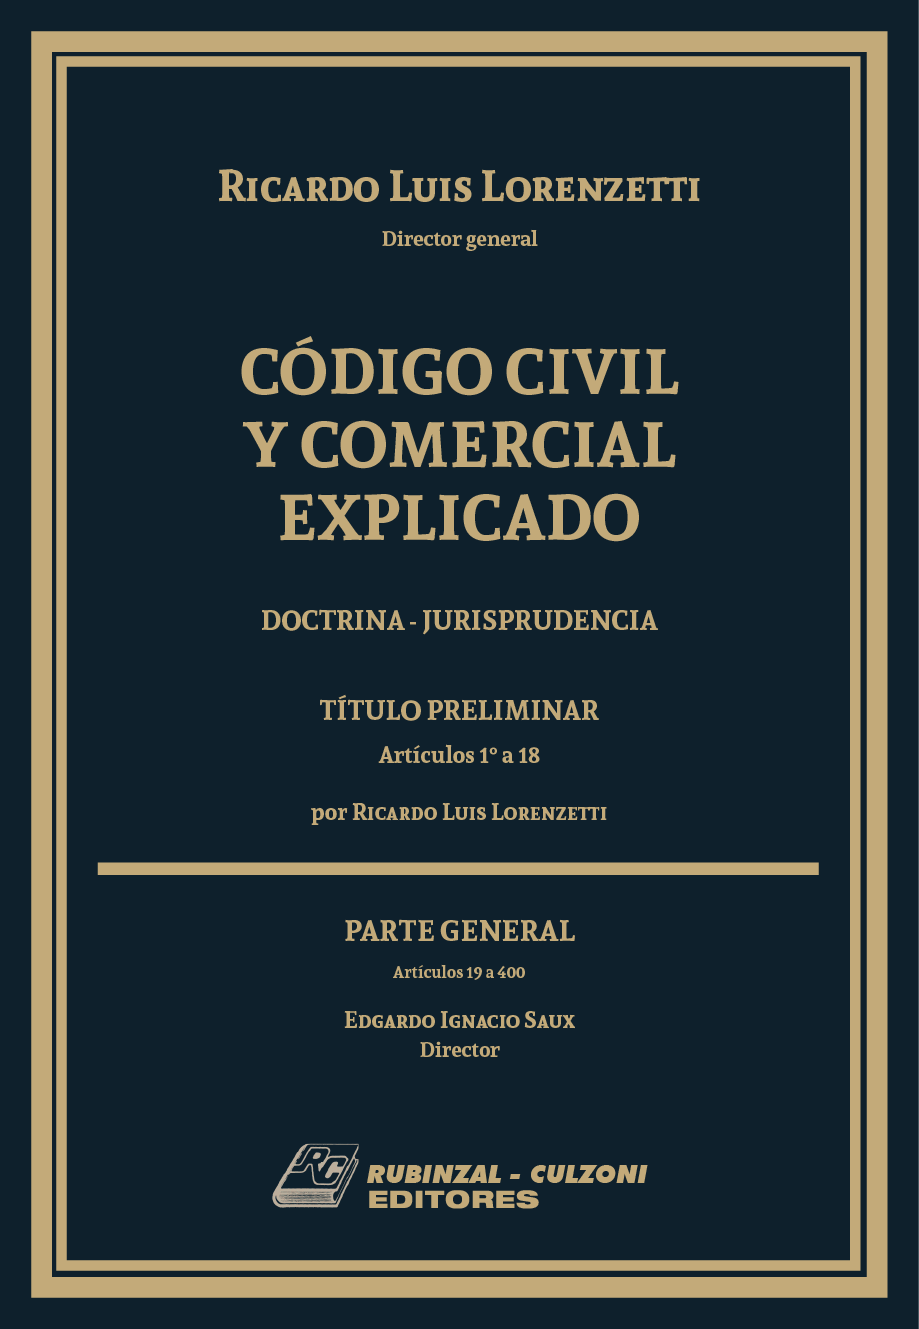 Código Civil y Comercial Explicado. Doctrina - Jurisprudencia -  Libro I : Parte General (Arts. 1° - 400) - (N° Páginas 728 )